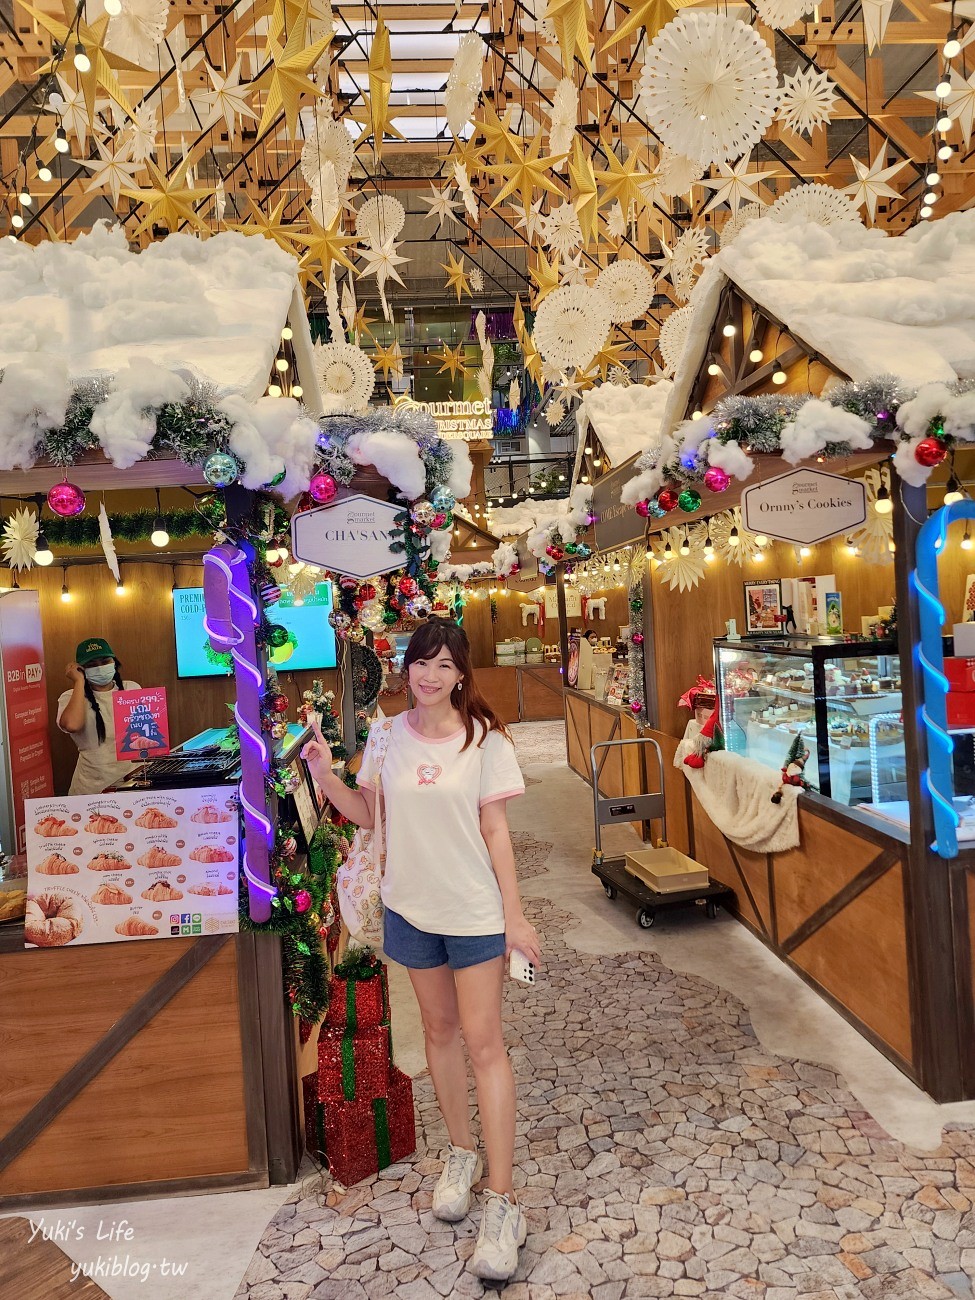 曼谷最新百貨|EMSPHERE購物中心|美食超多.BTS捷運Phrom Phong站.空橋直通 - yuki.tw